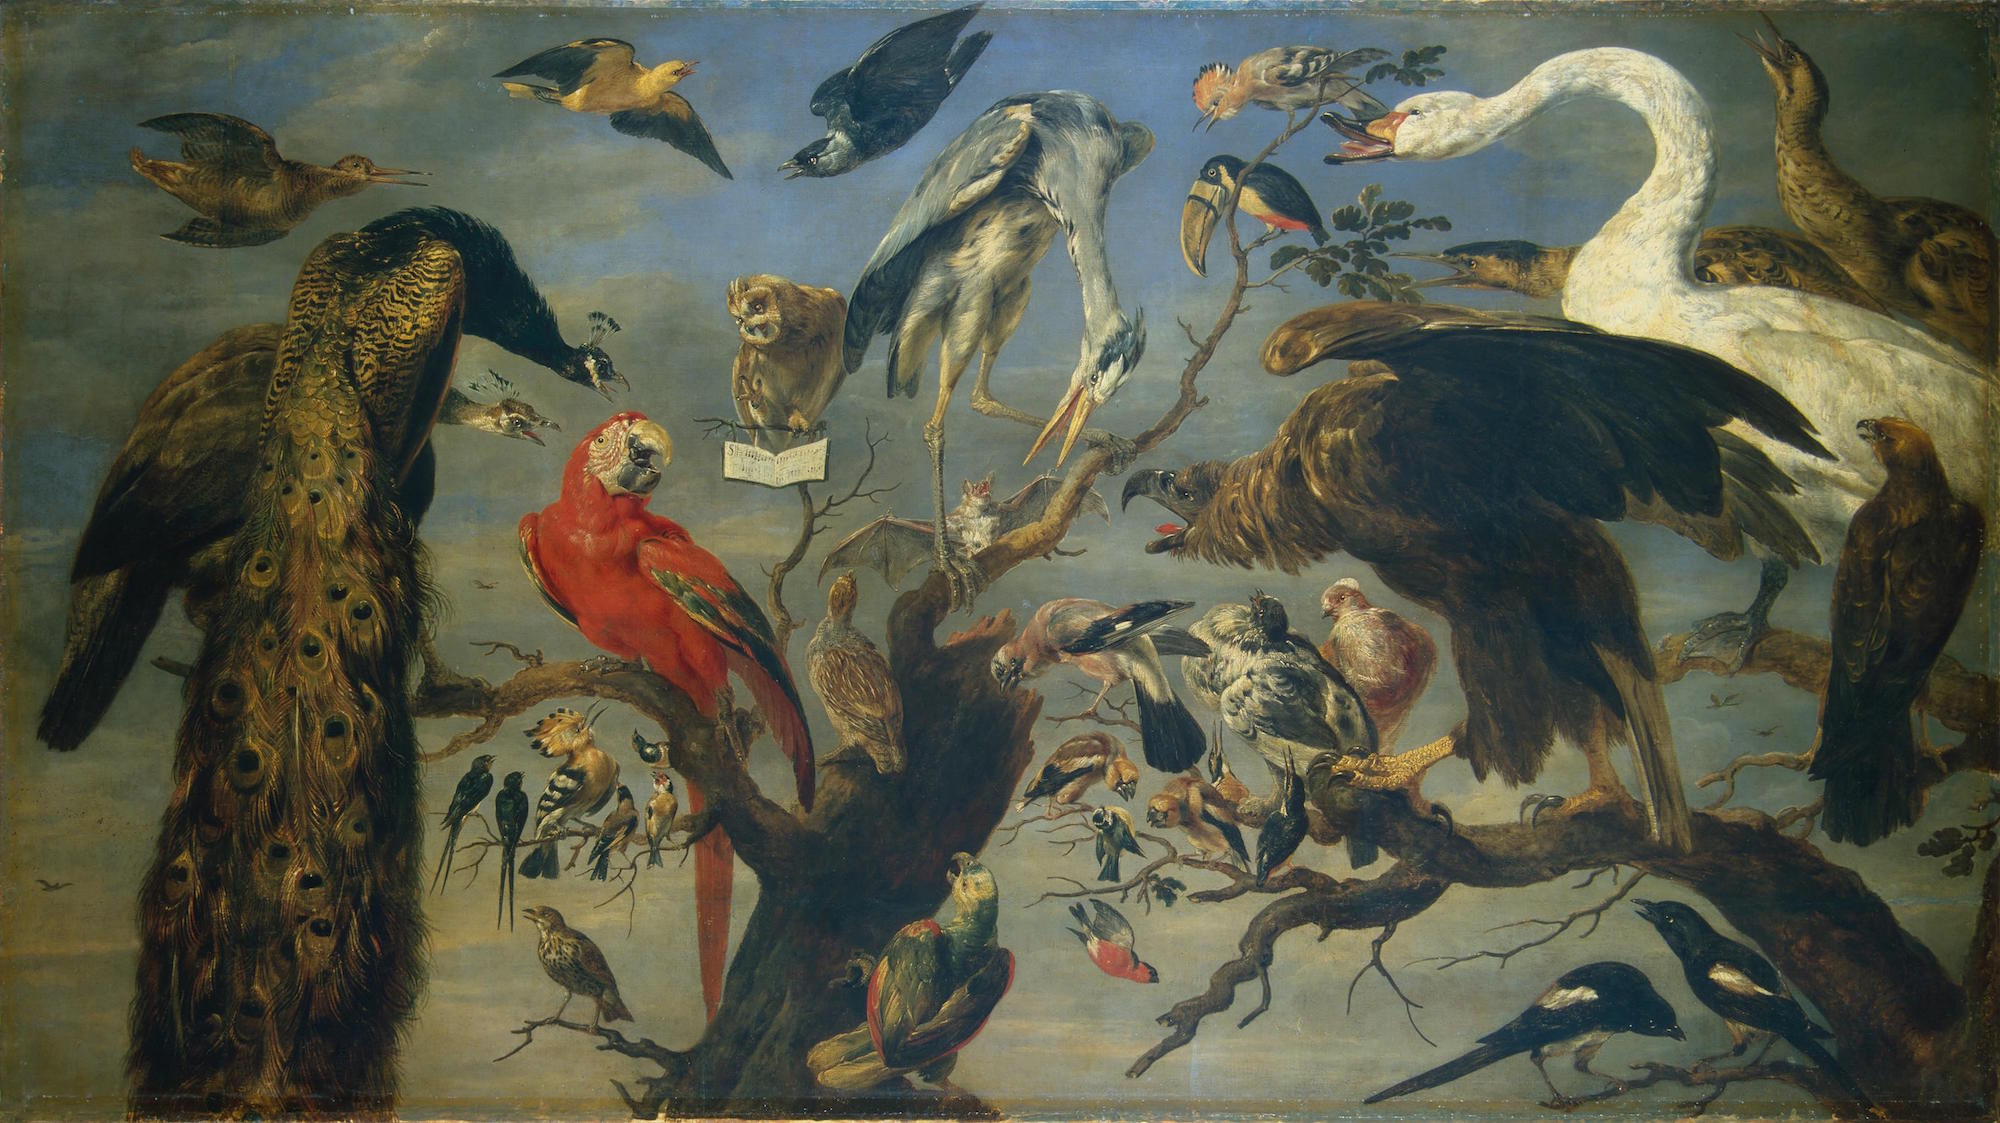 Concierto de aves by Frans Snyders - ca. 1630-1640 Museo del Hermitage